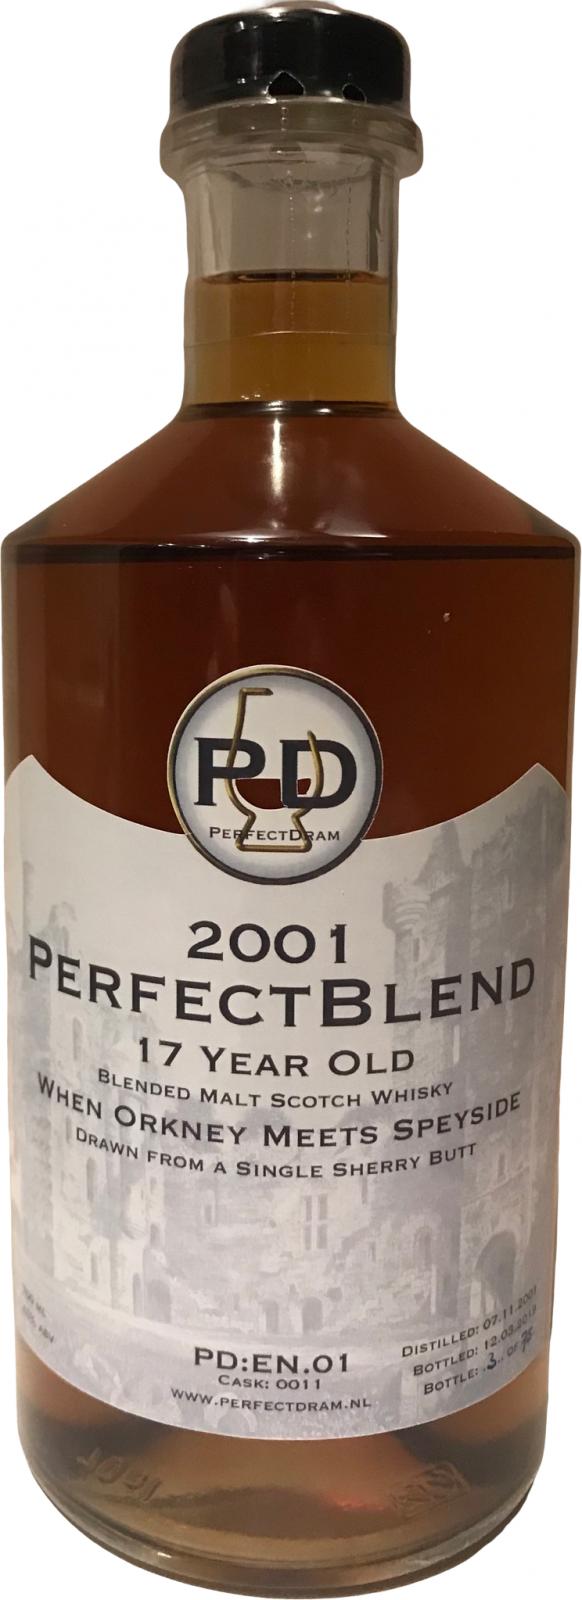 The Edrington Blend PerfectBlend 2001 PDnl PD:EN.01 Sherry butt #0011 45% 700ml